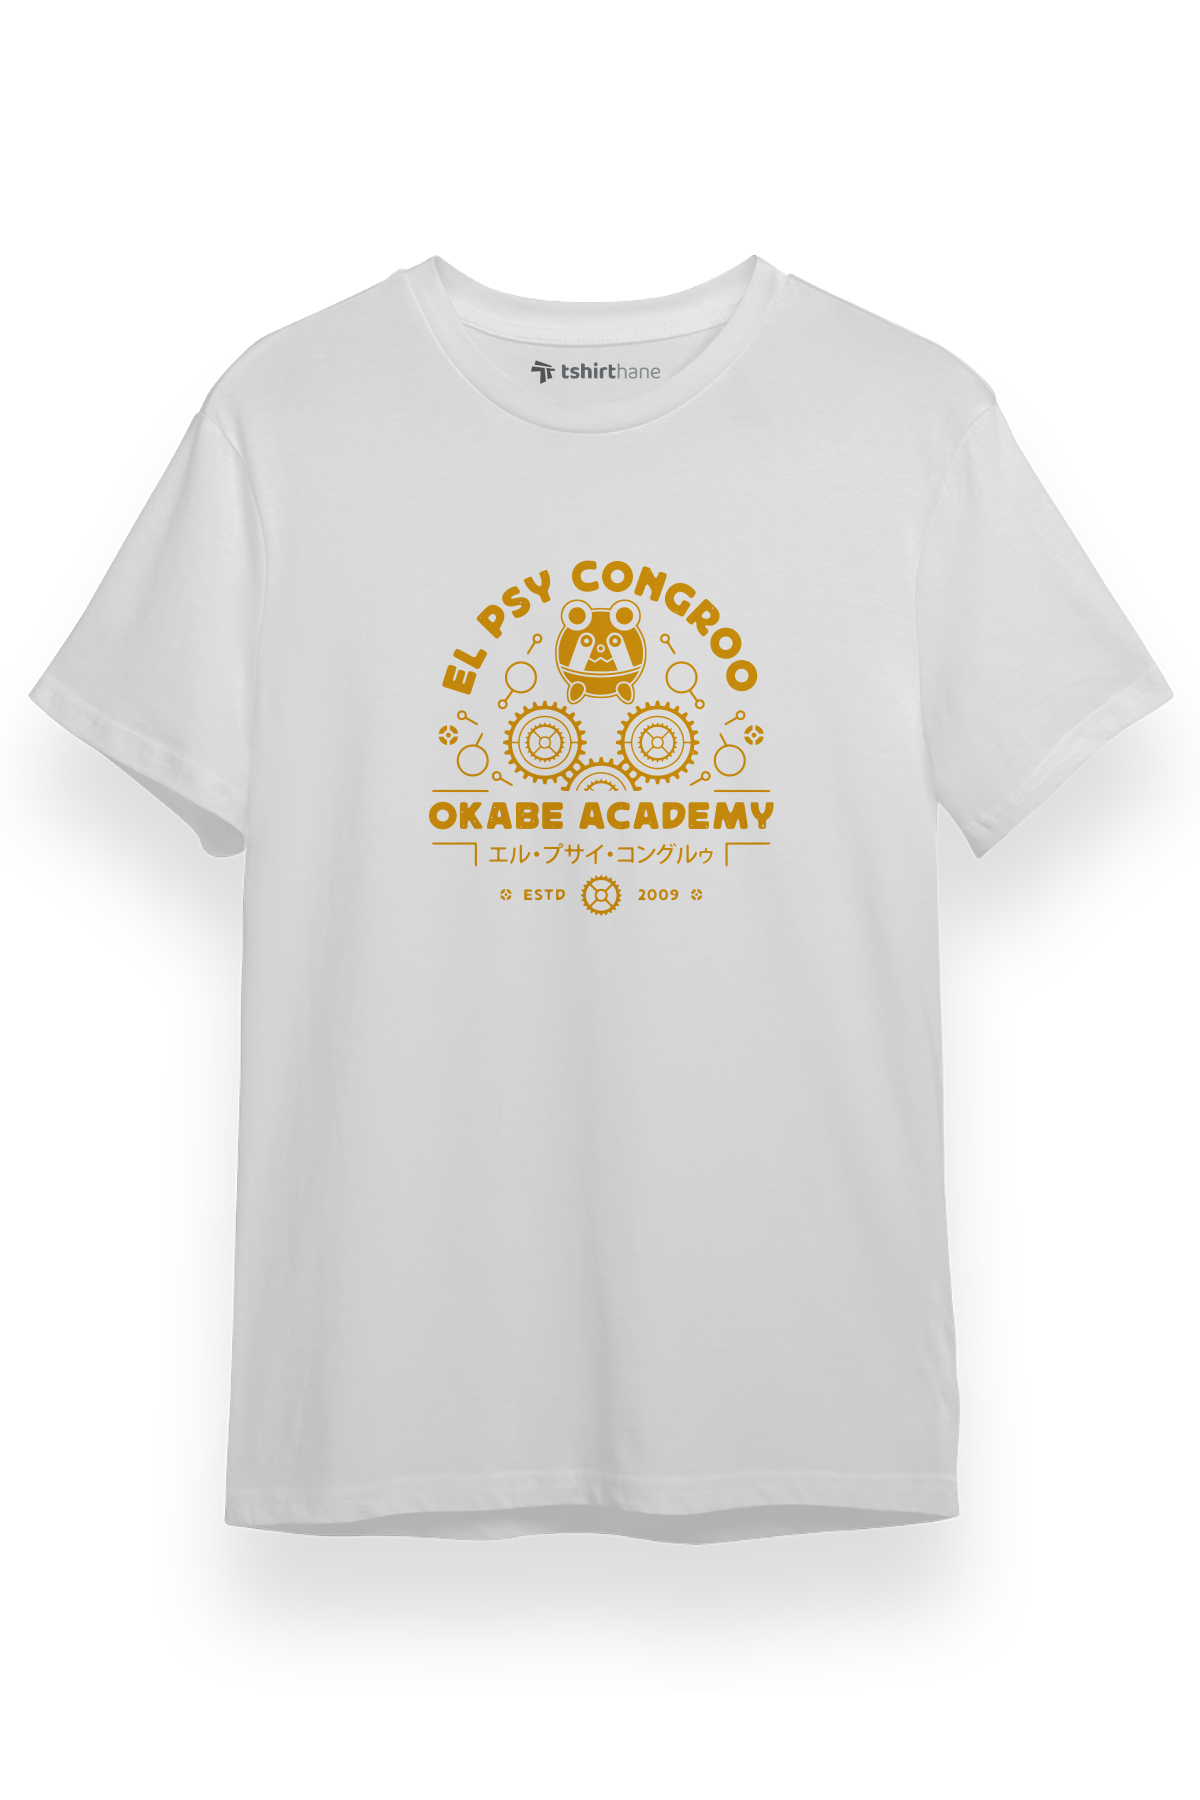 Steins Gate El Psy Congroo Academy Beyaz Kısa kol Erkek Tshirt